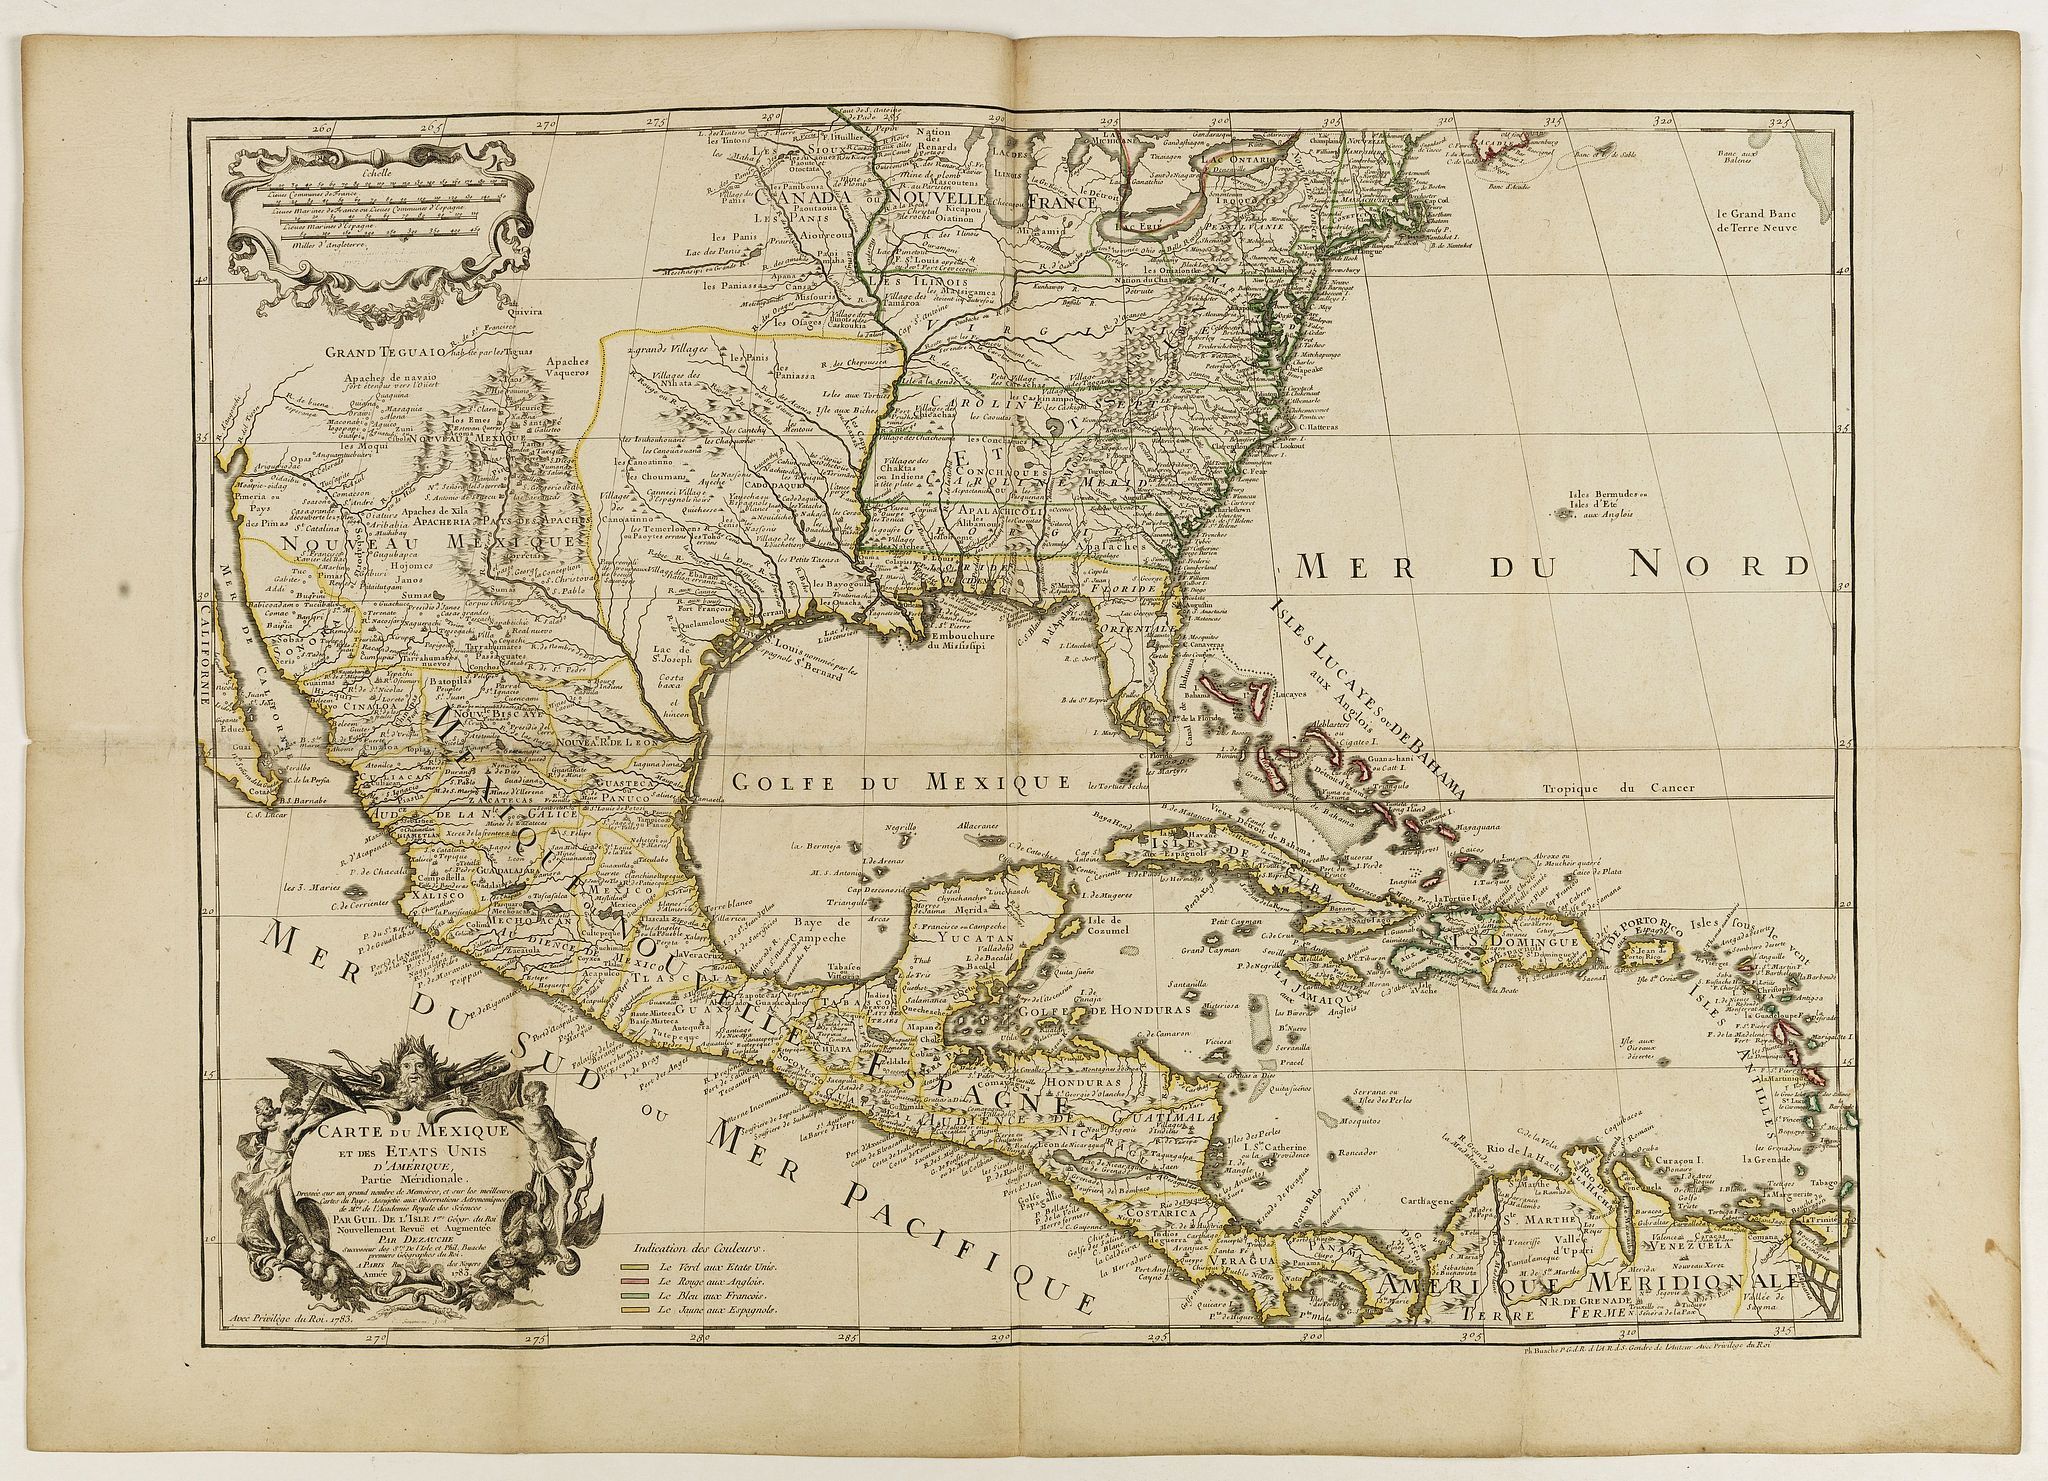 Carte du Mexique et des Etats Unis d'Amérique... - Old map by L'ISLE, G ...